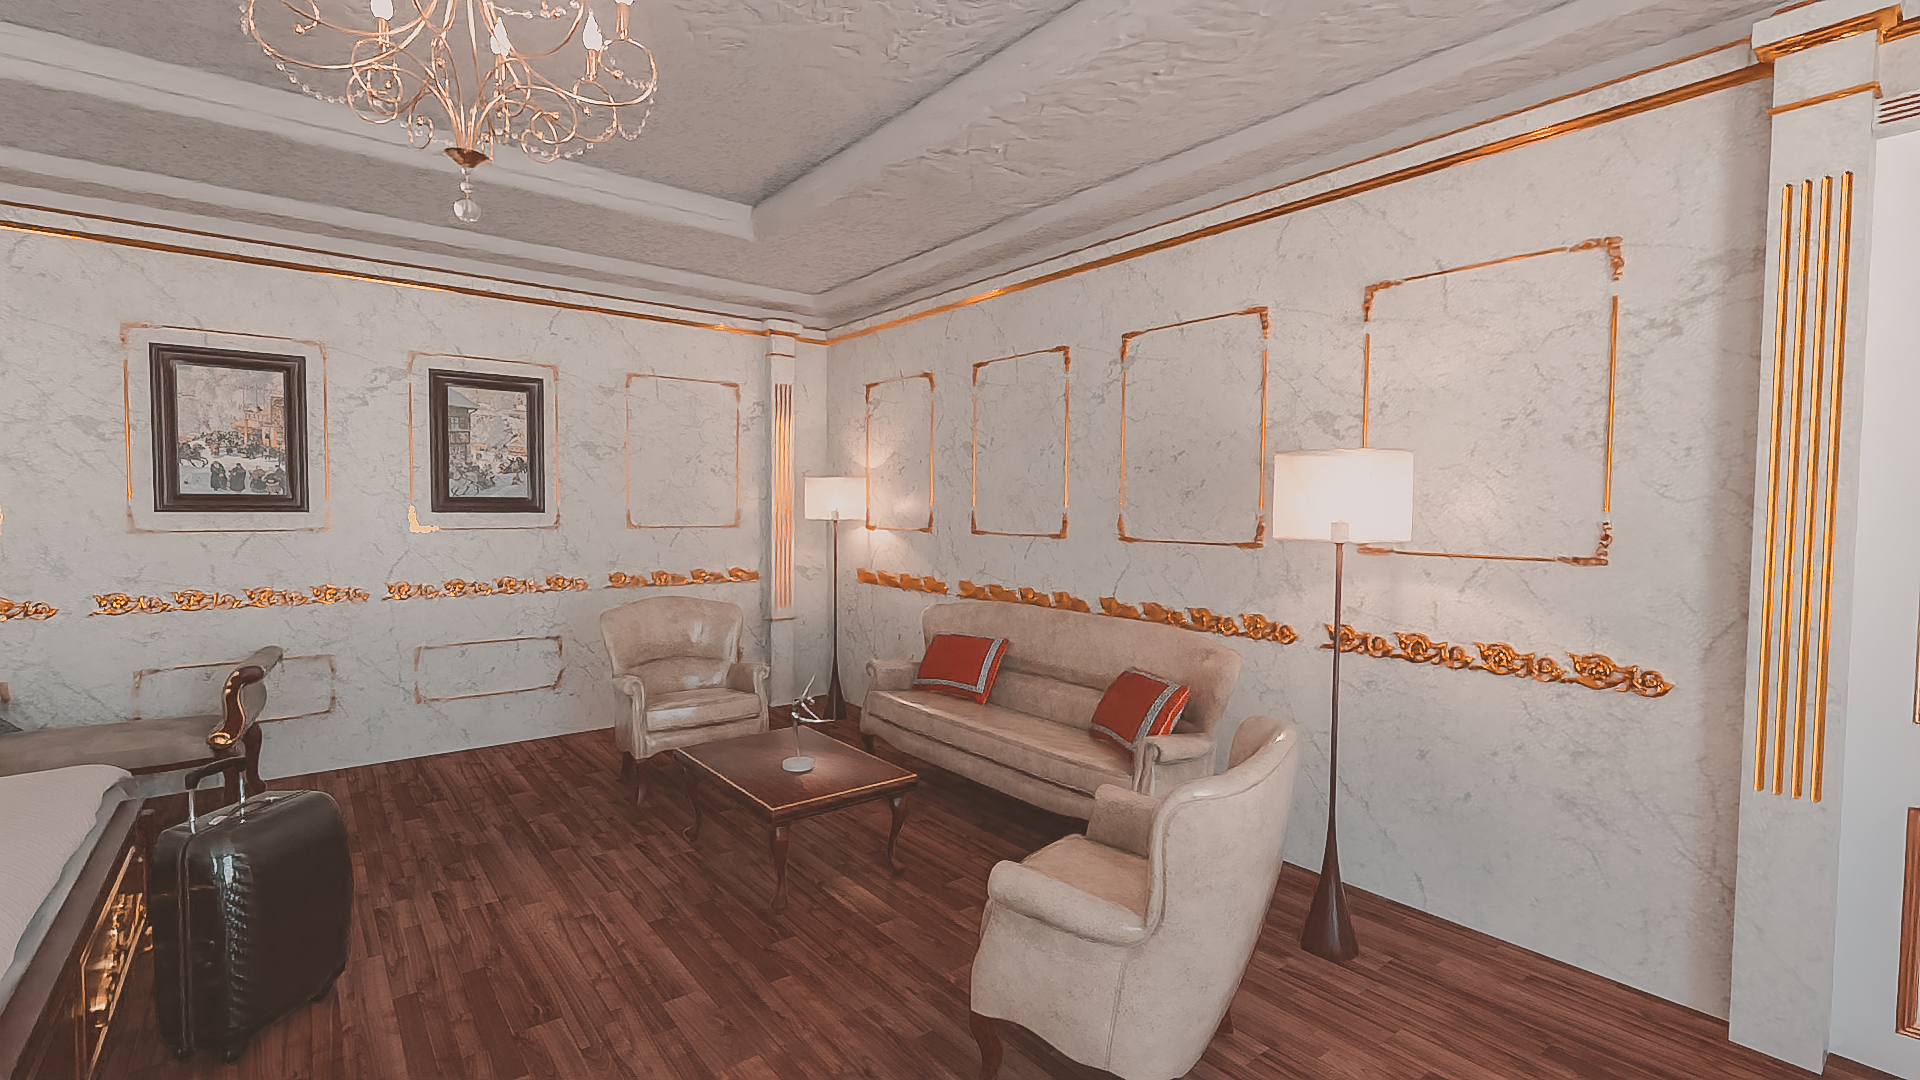 Russian Bedroom by: Tesla3dCorp, 3D Models by Daz 3D